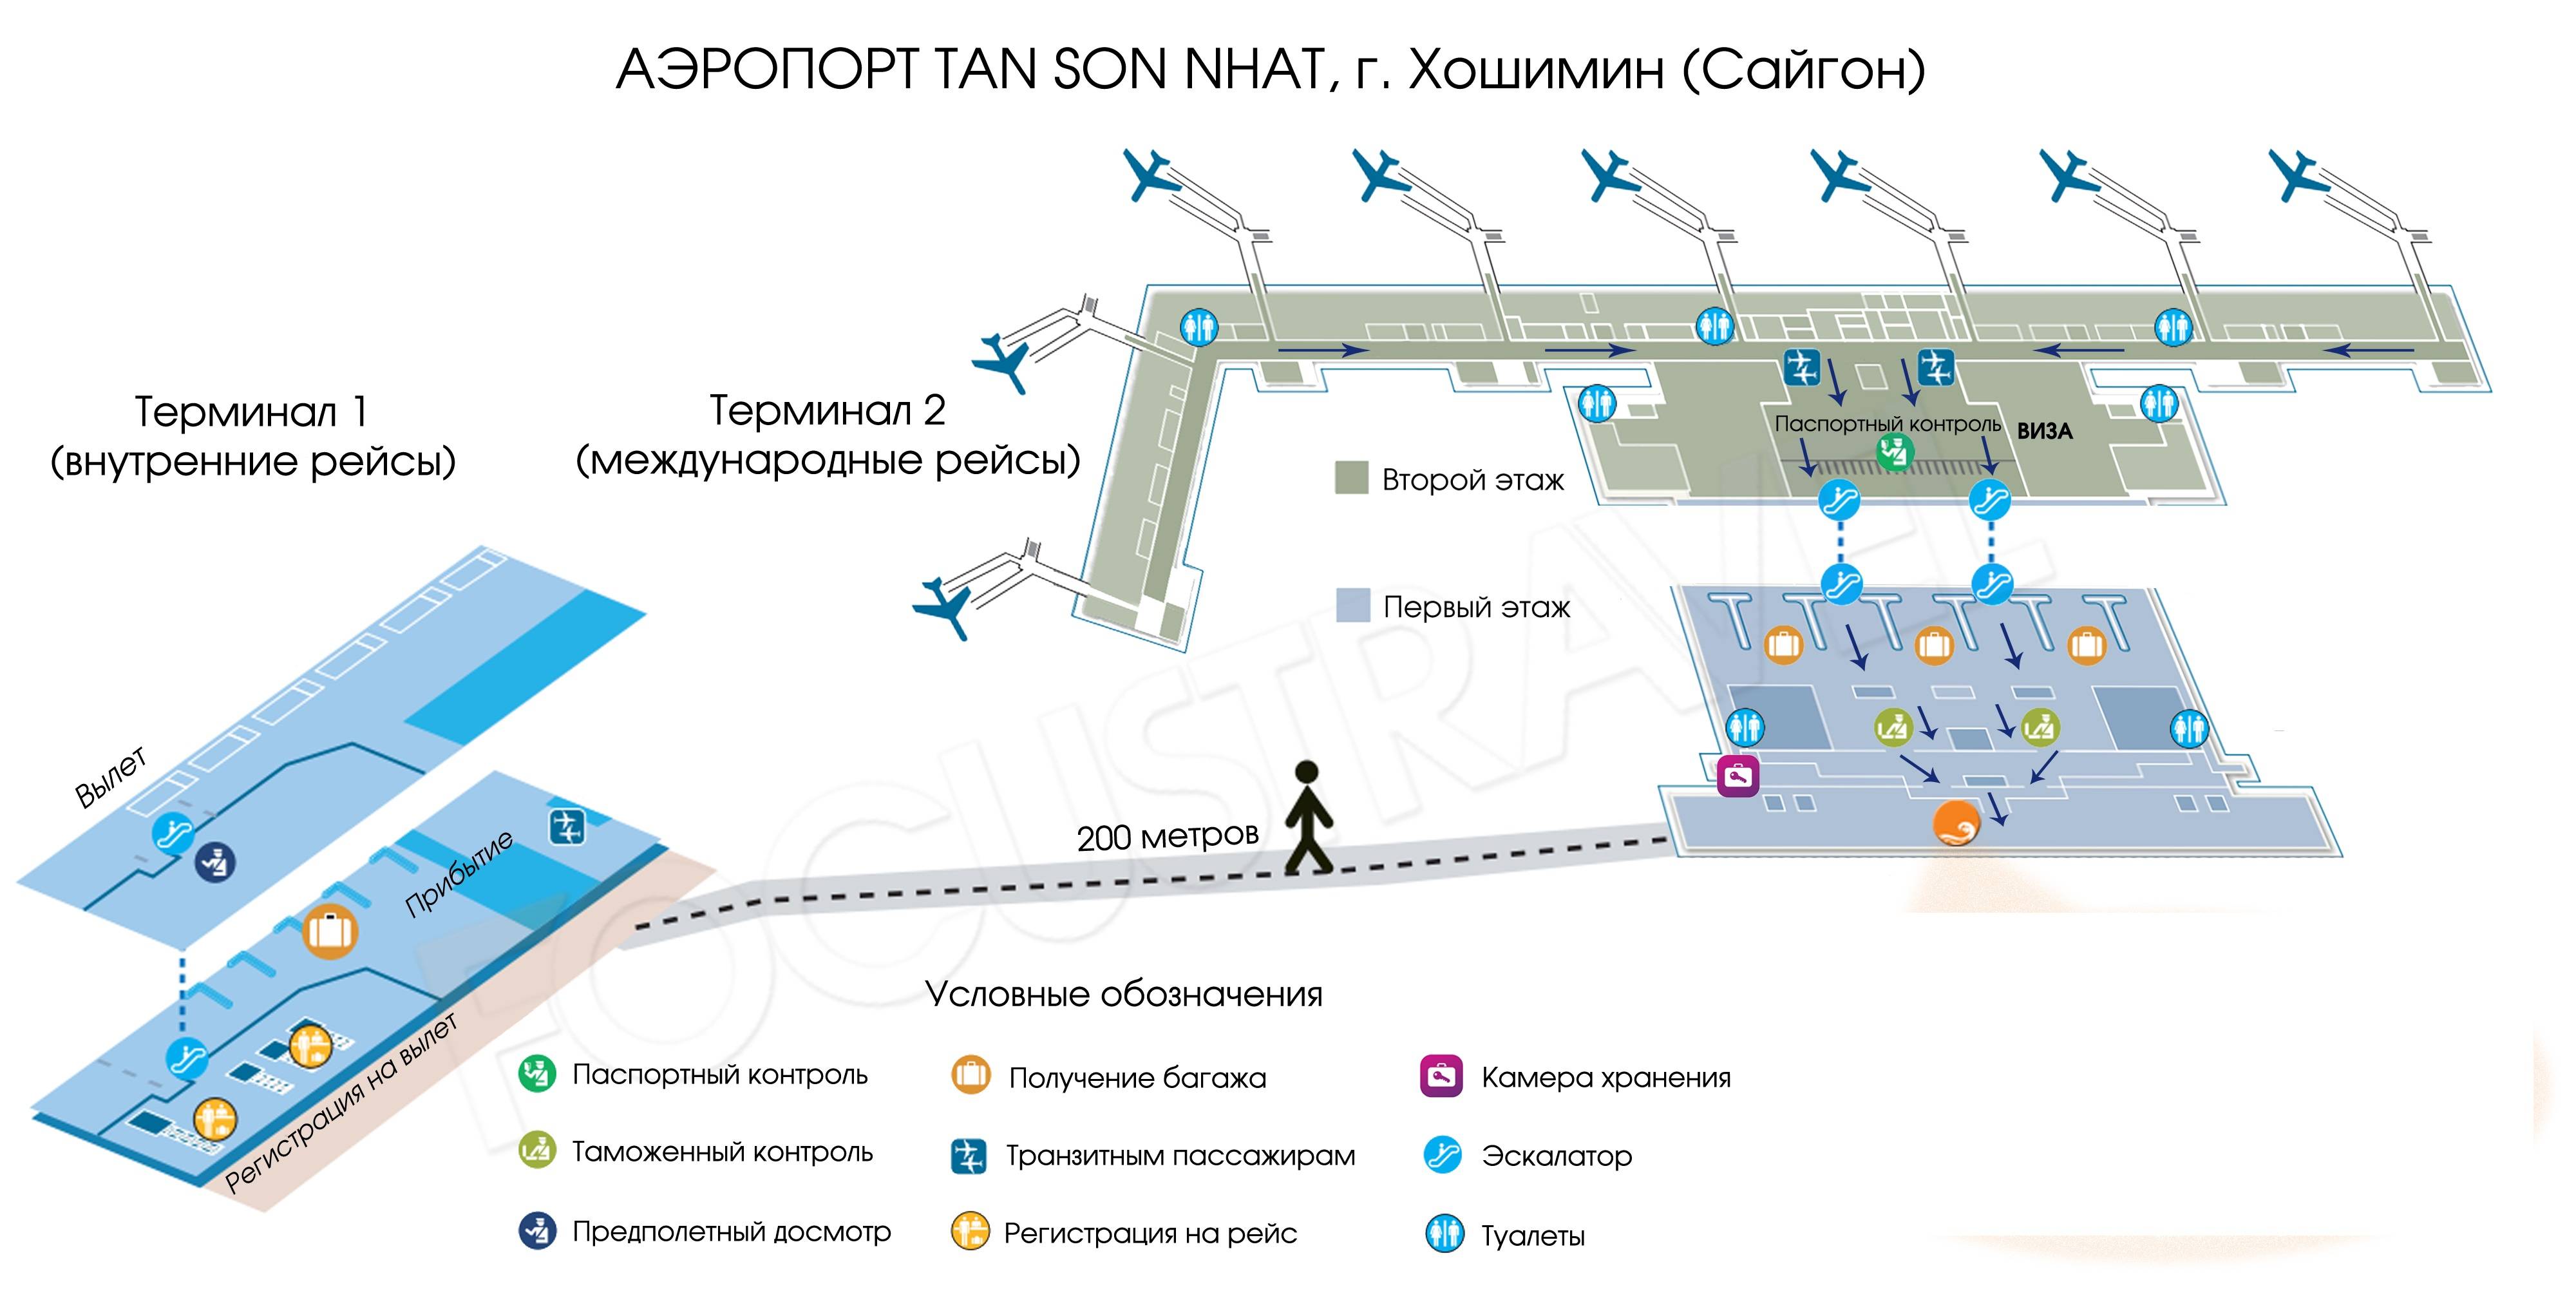 Как разобраться в аэропорту внуково: инструкция и советы